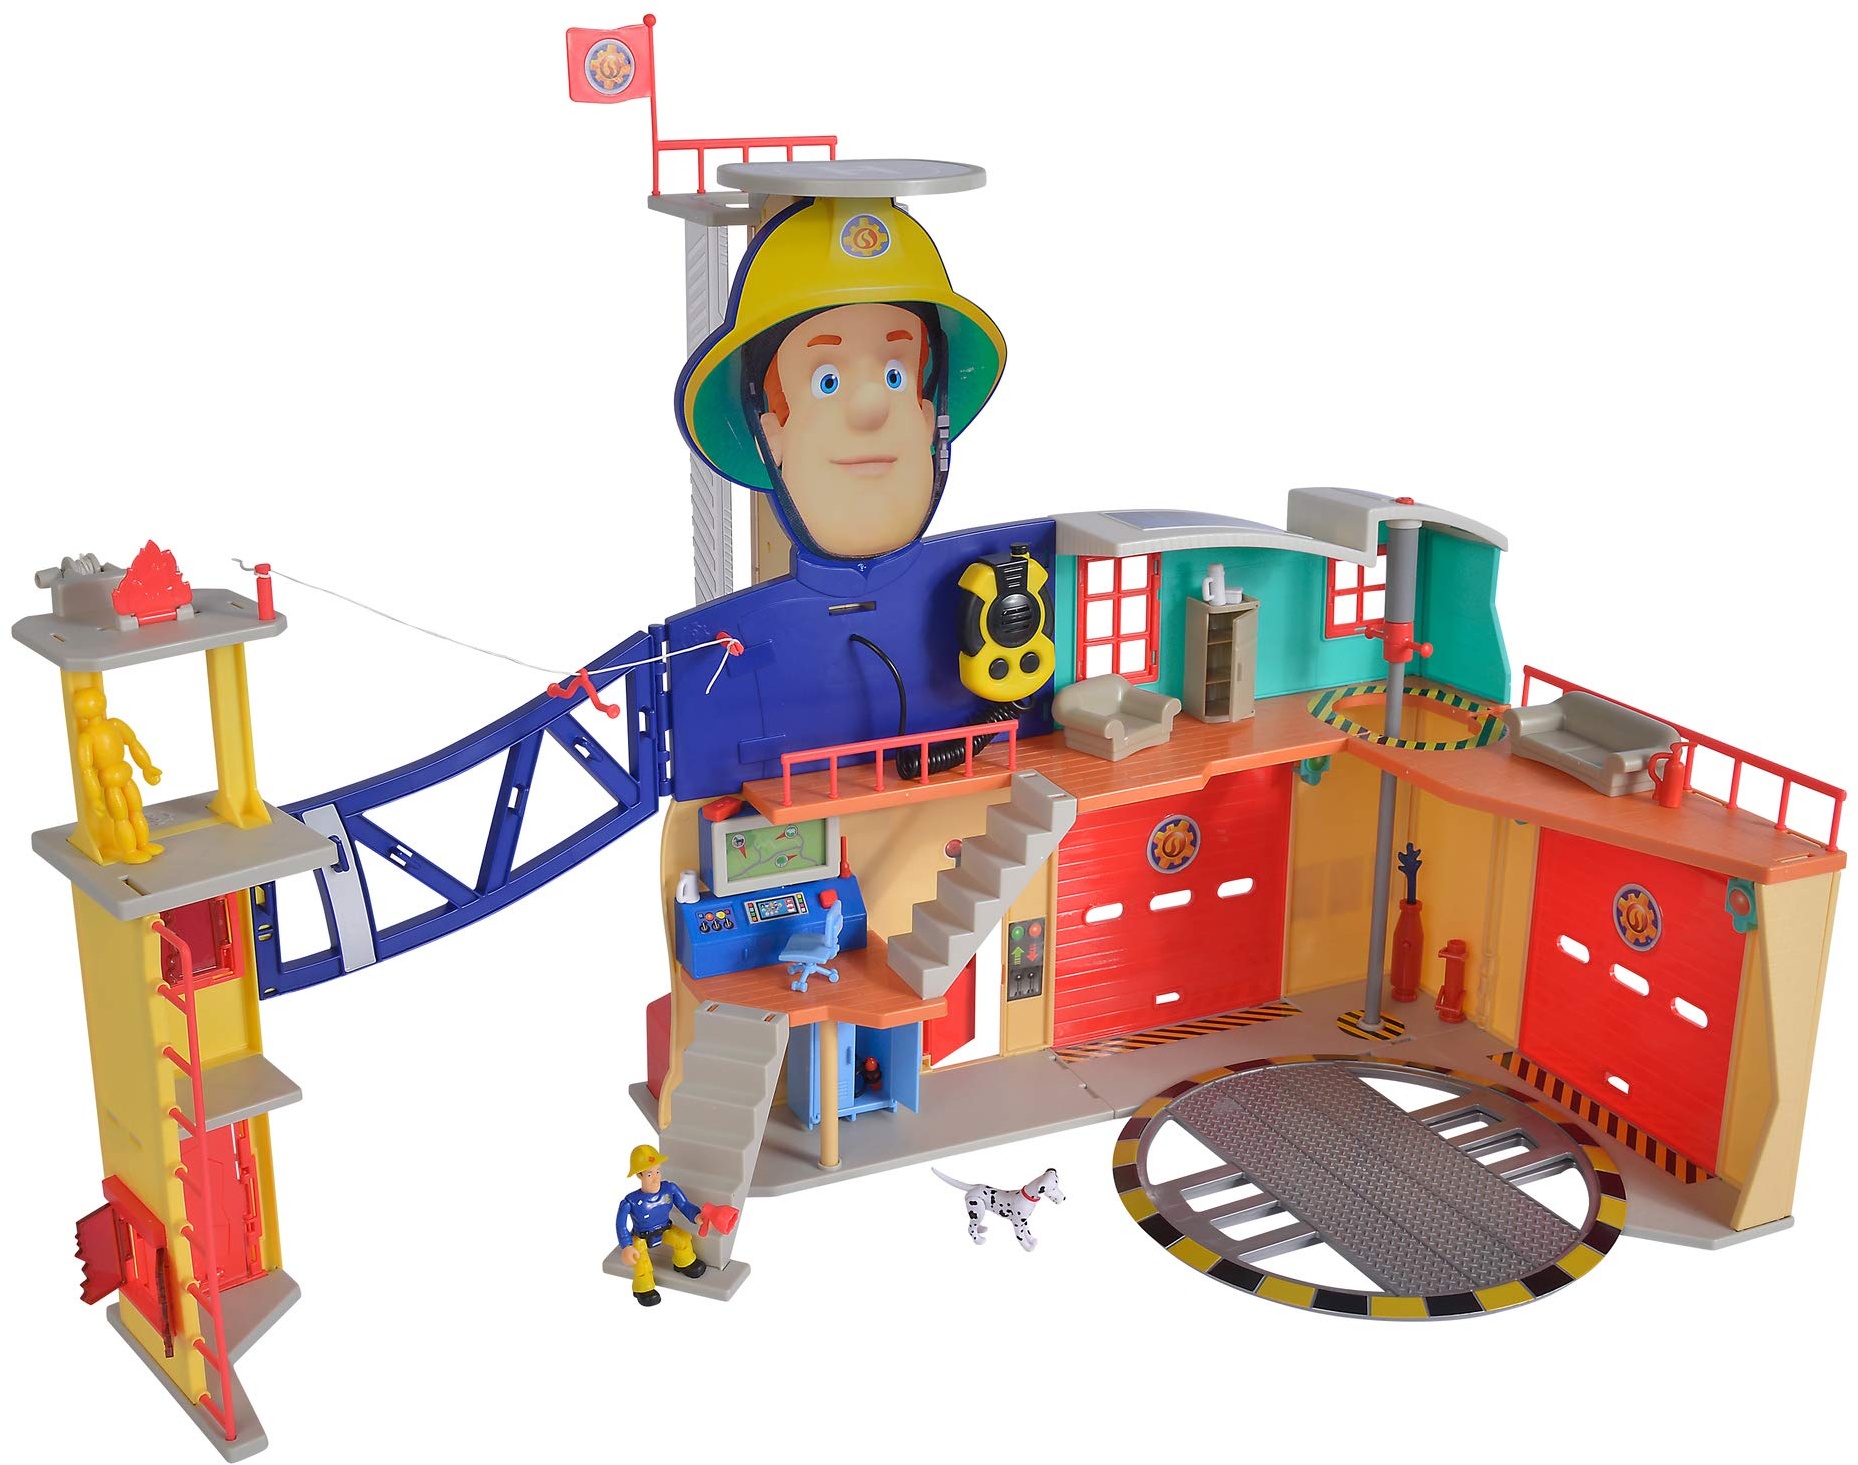 Simba 109251059 - Feuerwehrmann Sam Mega Feuerwehrstation XXL große Feuerwehrwache inklusive Sam Spielfigur, mit Licht, Sound und Funkgerät, für Kinder ab 3 Jahren[Exklusiv bei Amazon]